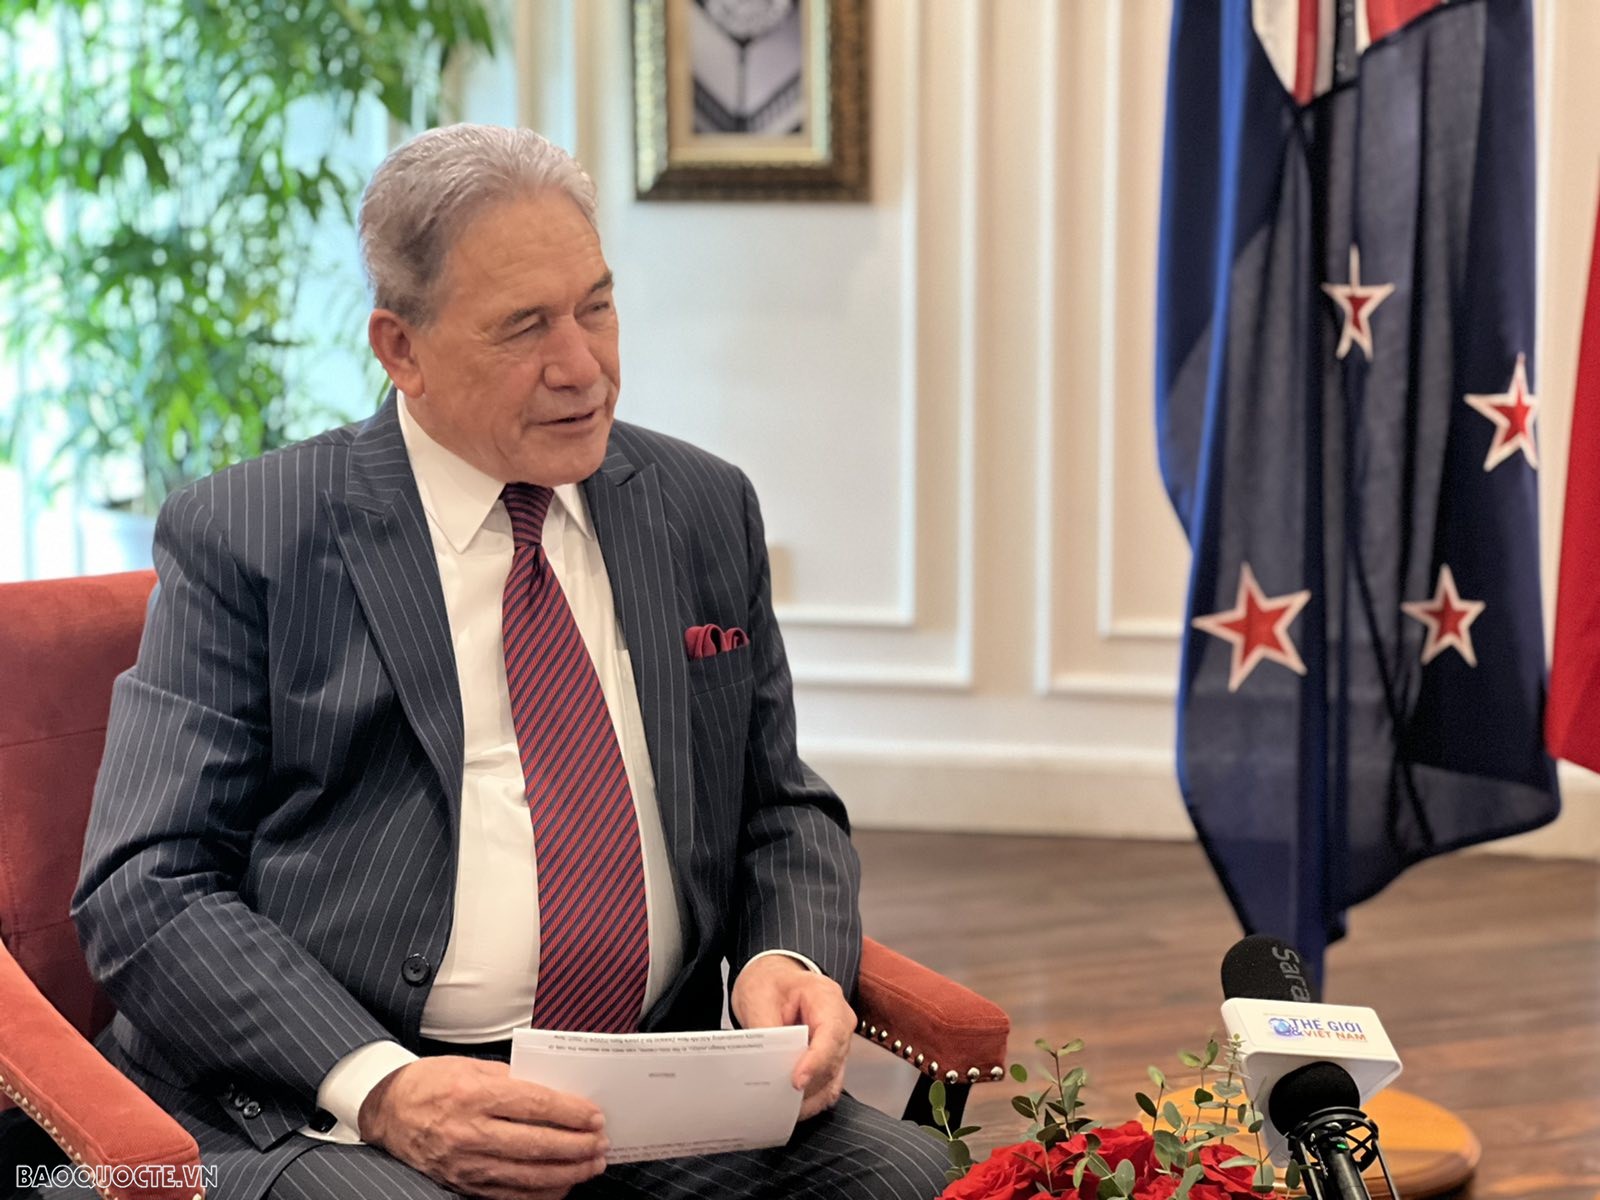 Phó Thủ tướng, Bộ trưởng Ngoại giao Winston Peters: Việt Nam đặc biệt quan trọng đối với New Zealand